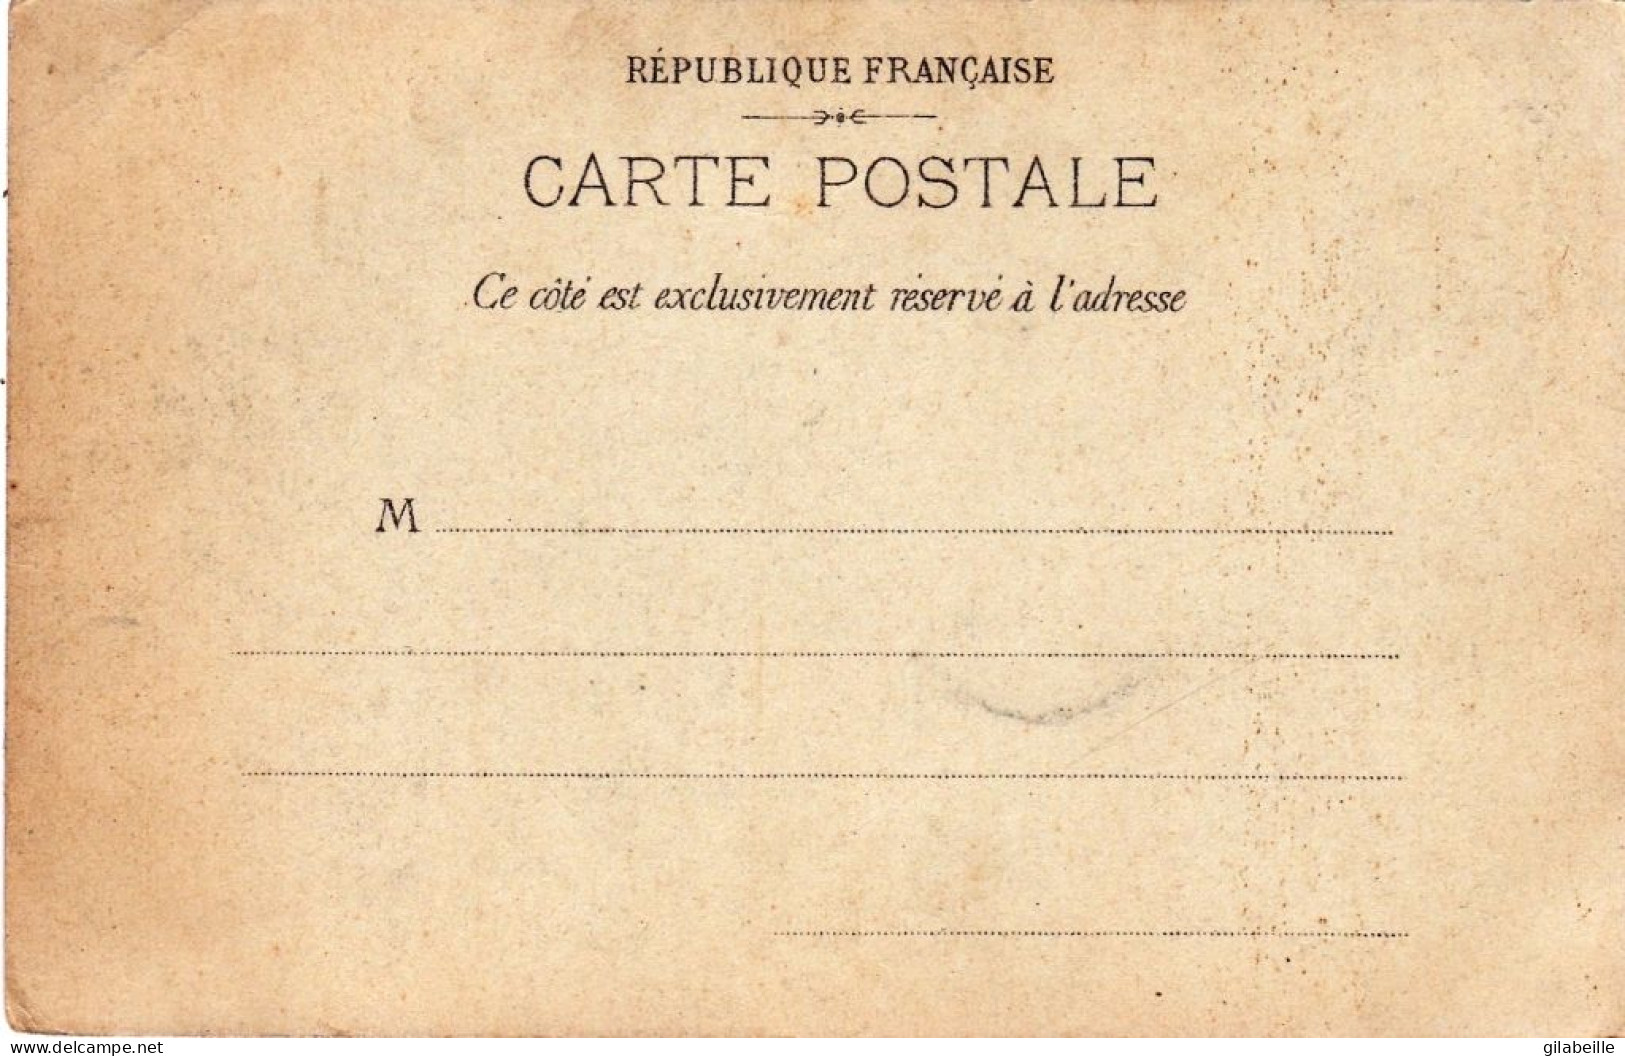 75 - PARIS - Exposition Universelle De 1900 - Exposition Coloniale Du Trocadero - Ausstellungen